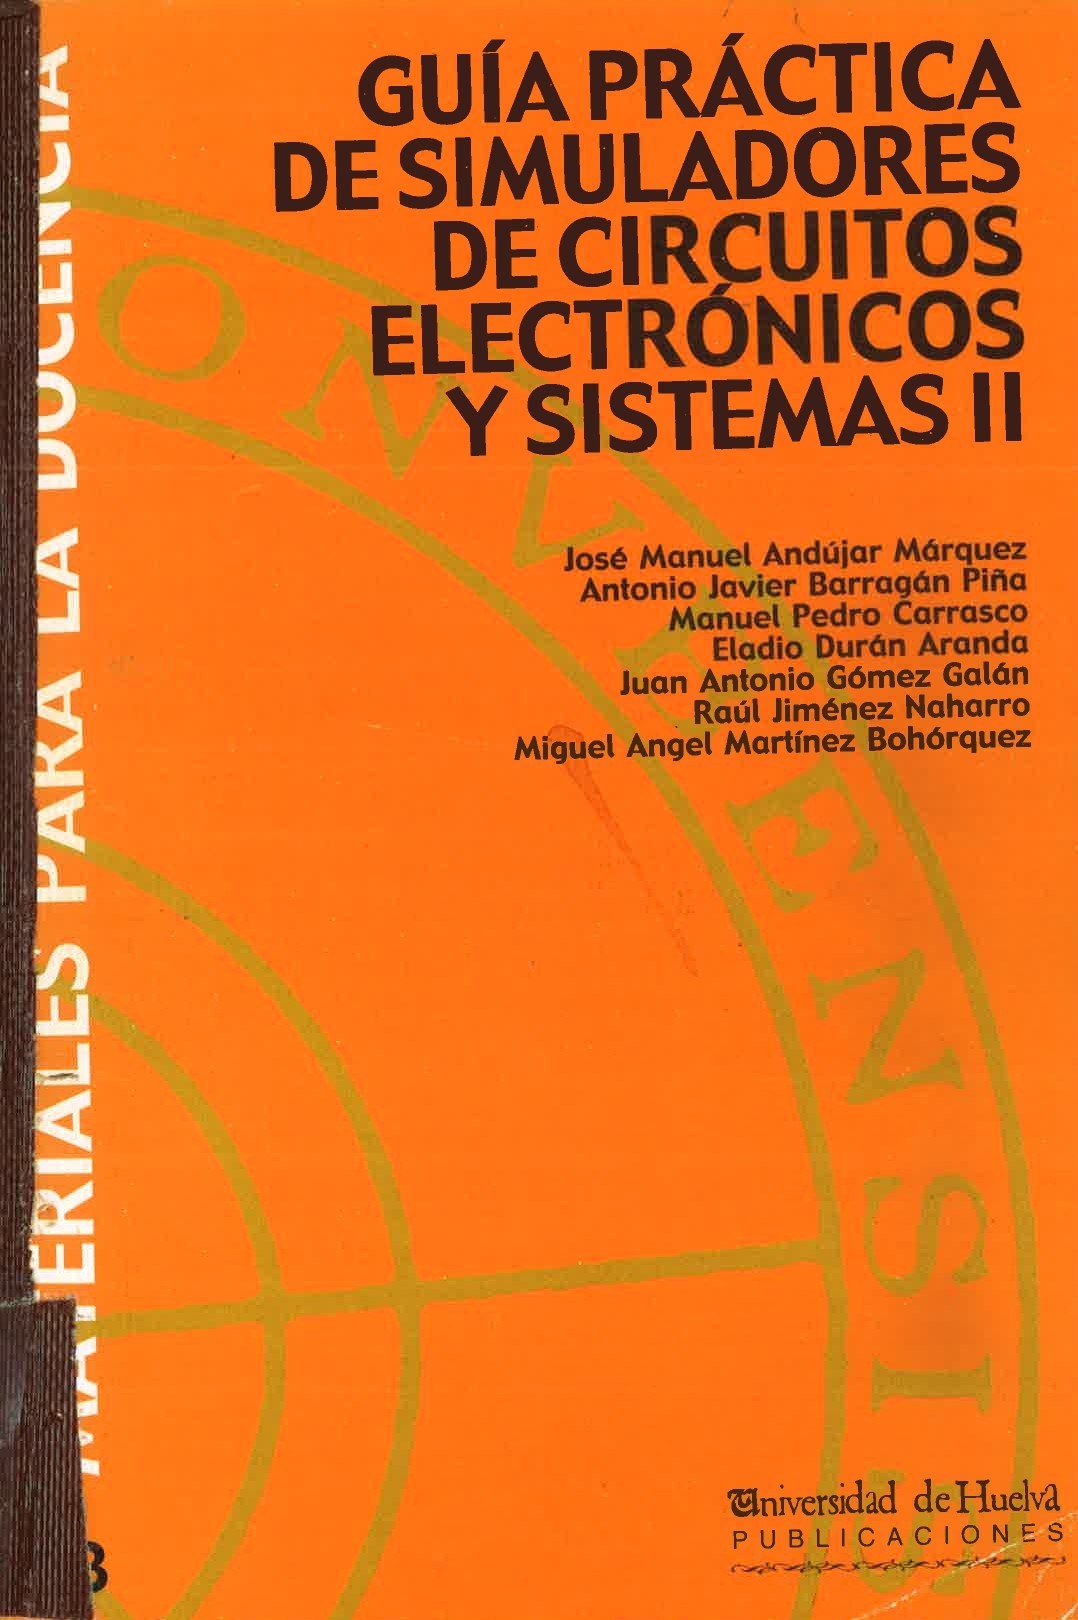 Imagen de portada del libro Guía práctica de simuladores de circuitos electrónicos y sistemas II